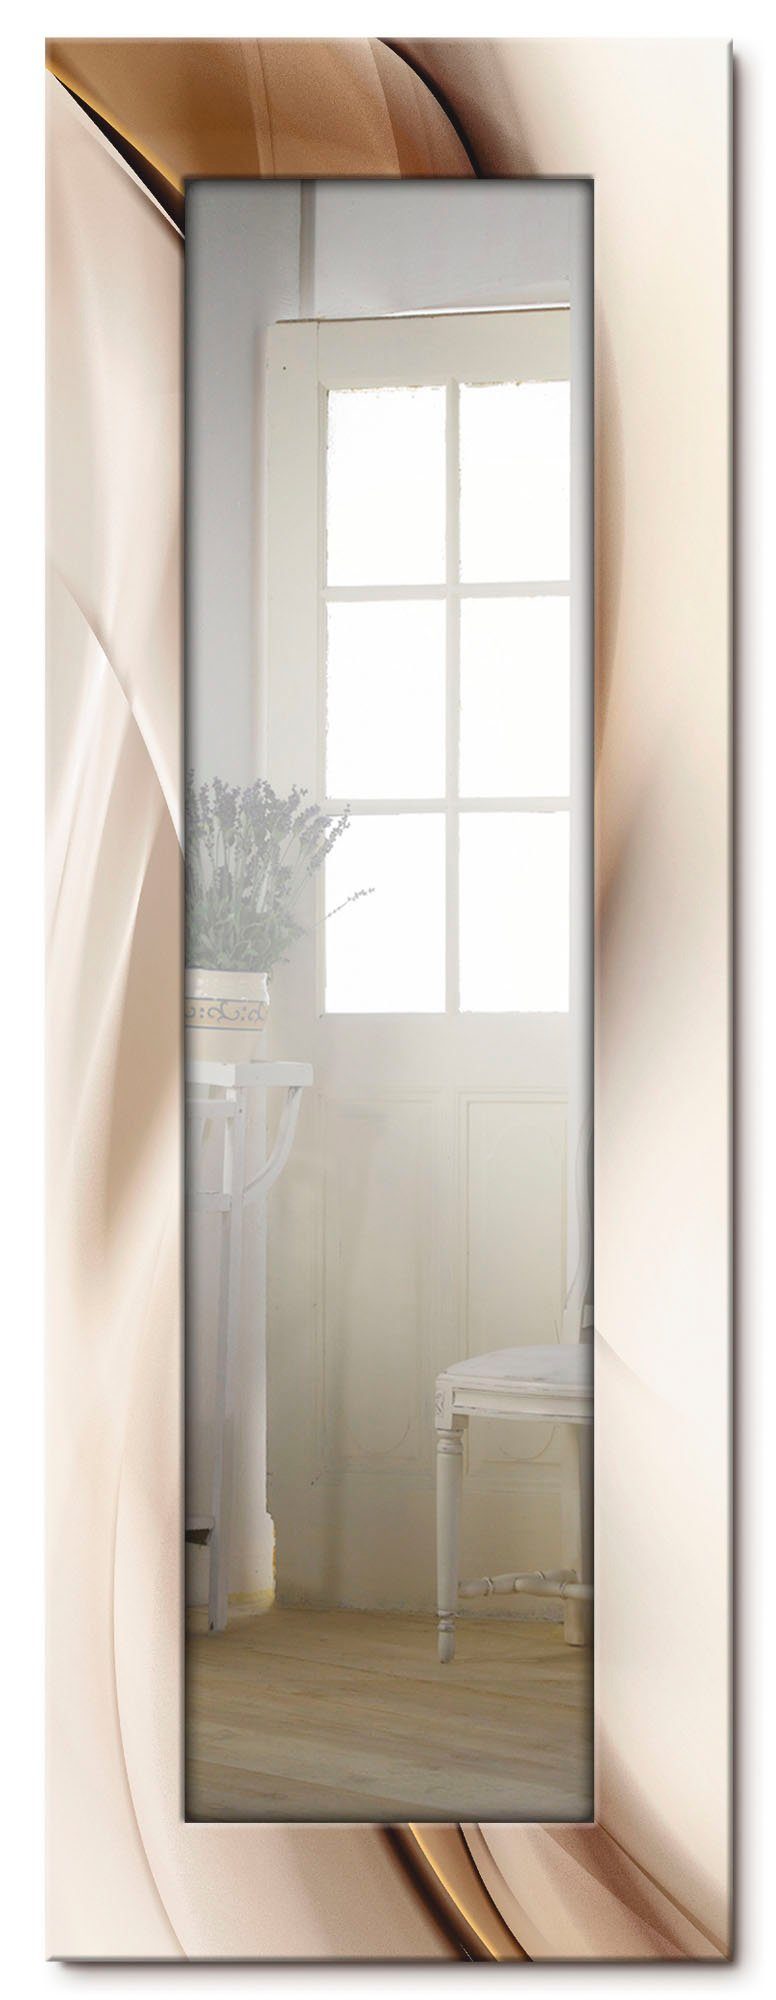 Artland Dekospiegel »Braune abstrakte Welle«, gerahmter Ganzkörperspiegel  mit Motivrahmen, geeignet für kleinen, schmalen Flur, Flurspiegel, Mirror  Spiegel gerahmt zum Aufhängen online kaufen | OTTO